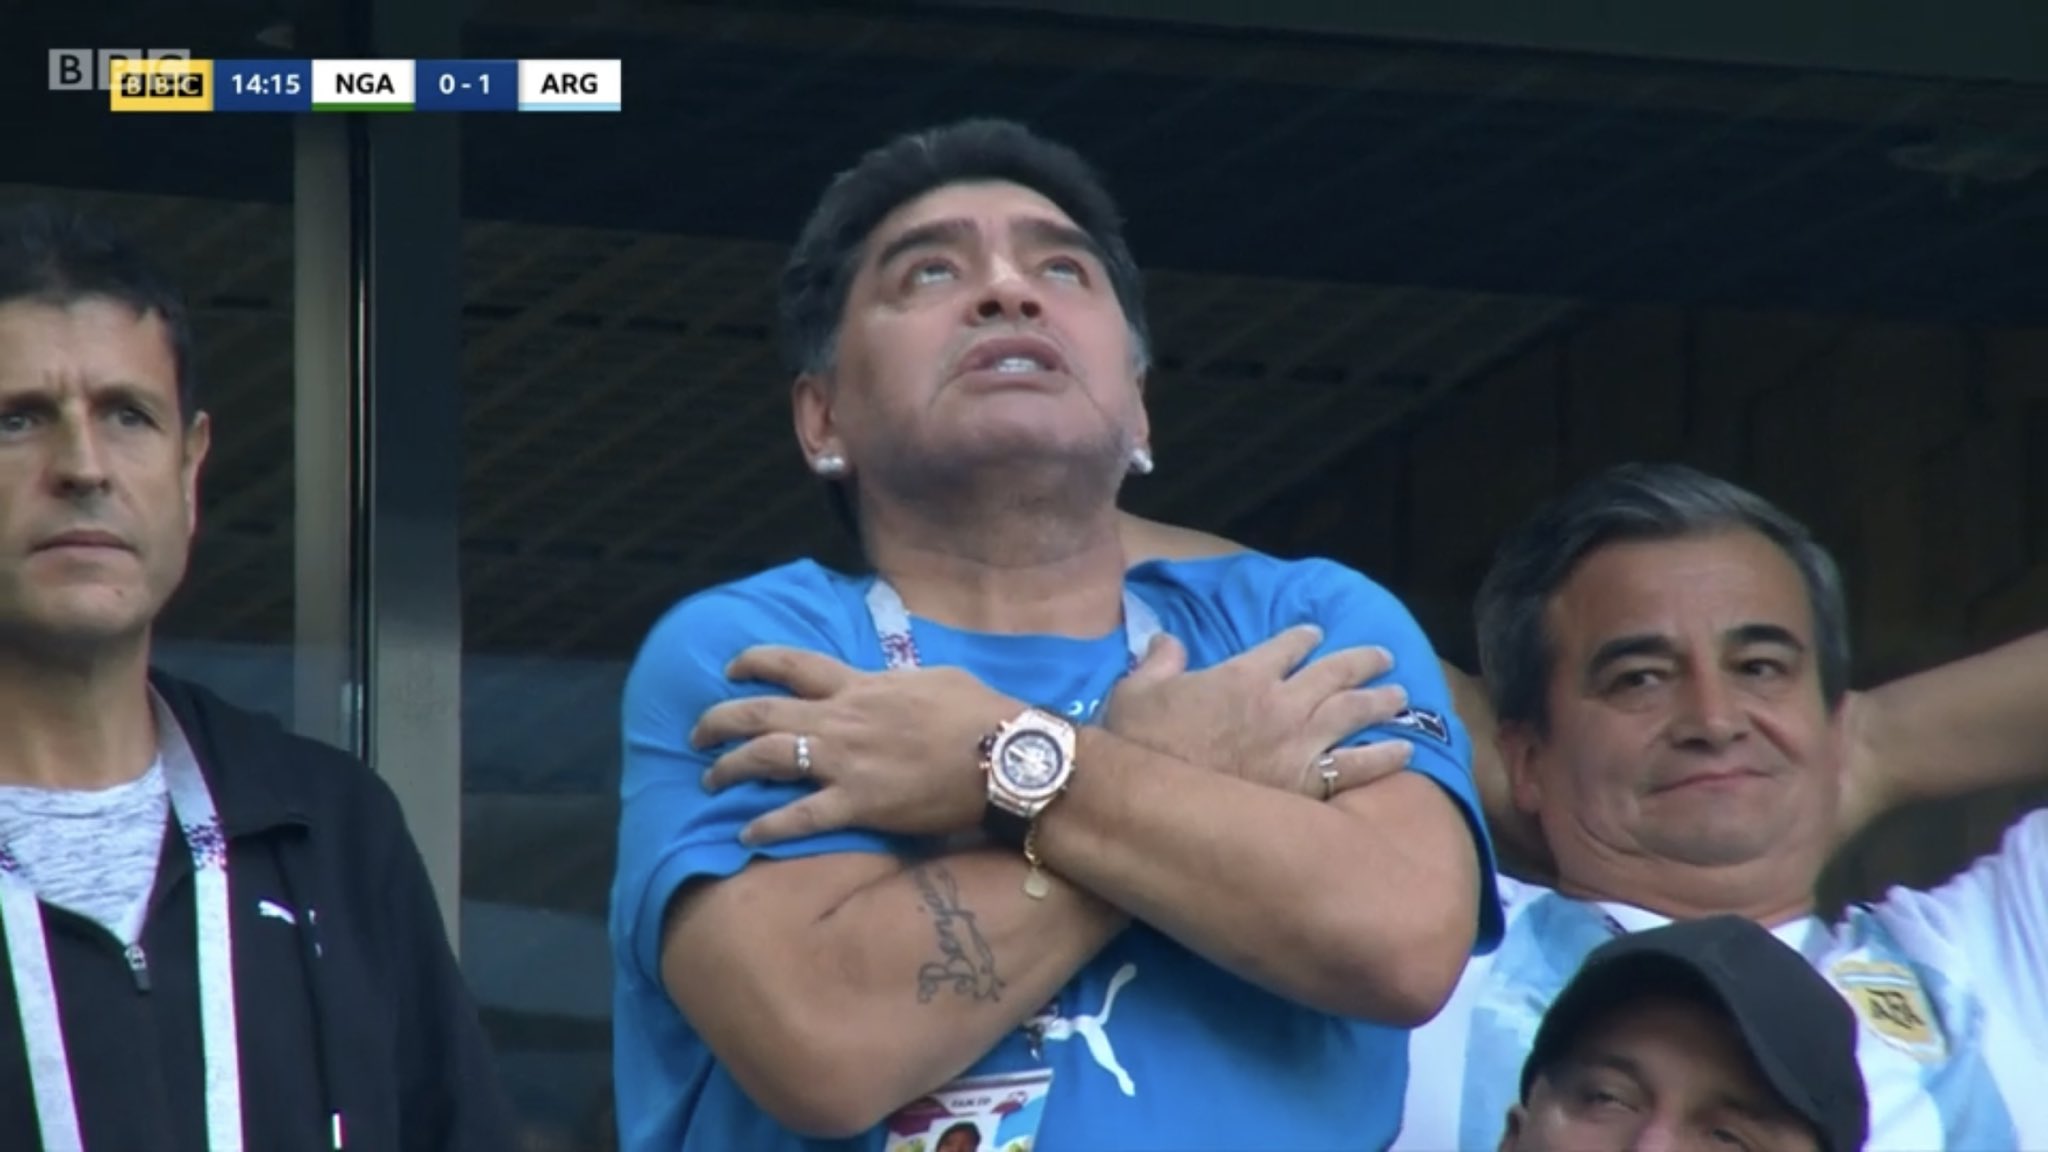 Maradona: Cùng đến với hình ảnh Maradona, huyền thoại của bóng đá thế giới. Xem các khoảnh khắc đỉnh cao của anh ta với những pha trình diễn kỹ thuật đầy ấn tượng. Không thể bỏ qua sự nghiệp và tài năng của ngôi sao này.